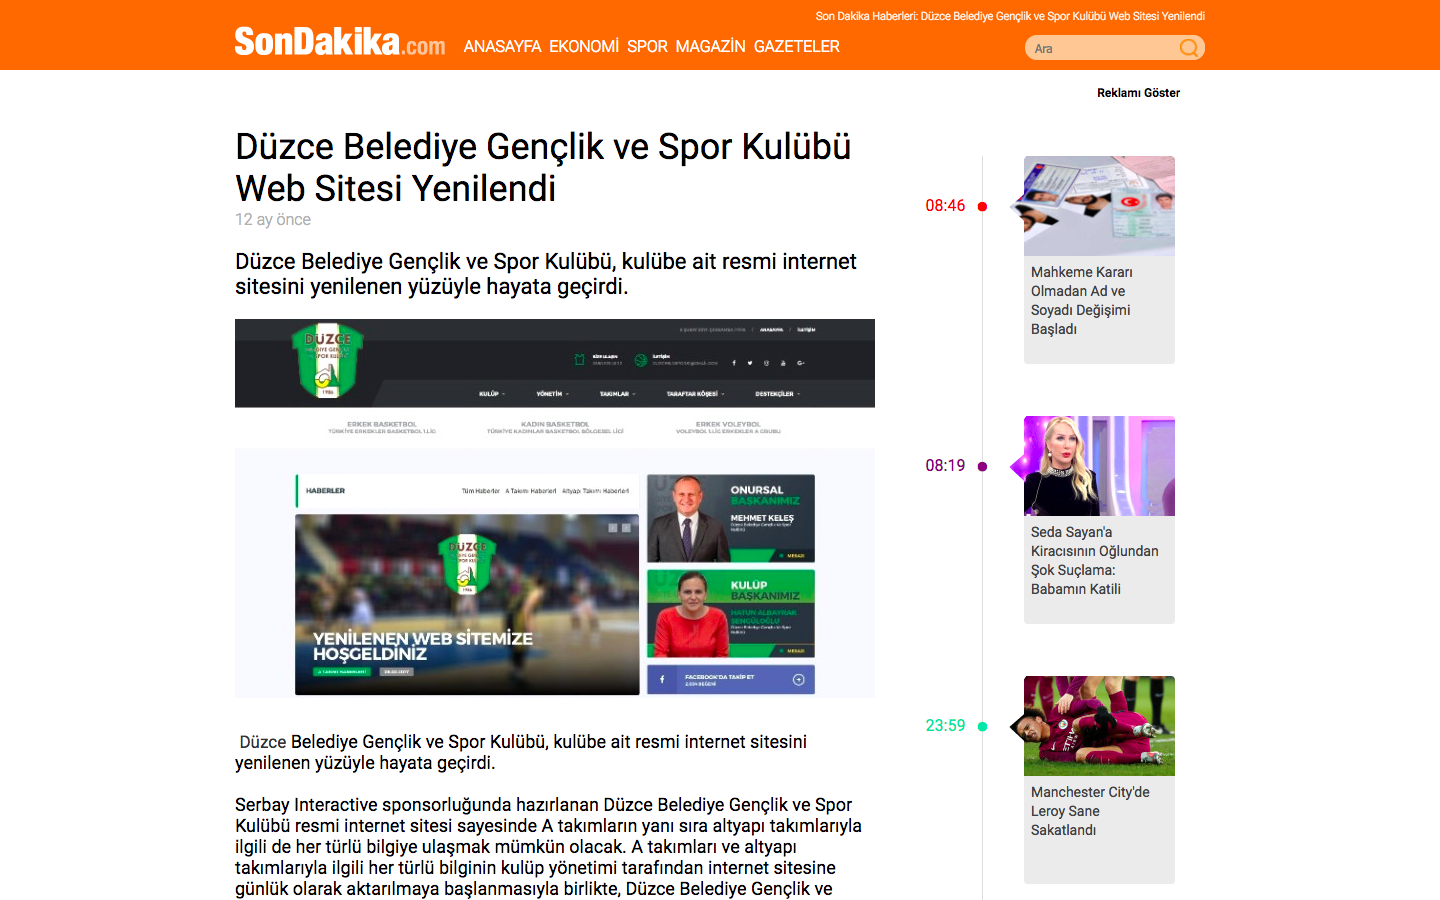 Düzce Belediye Gençlik ve Spor Kulübü Web Sitesi Yenilendi haberi ulusal basında.